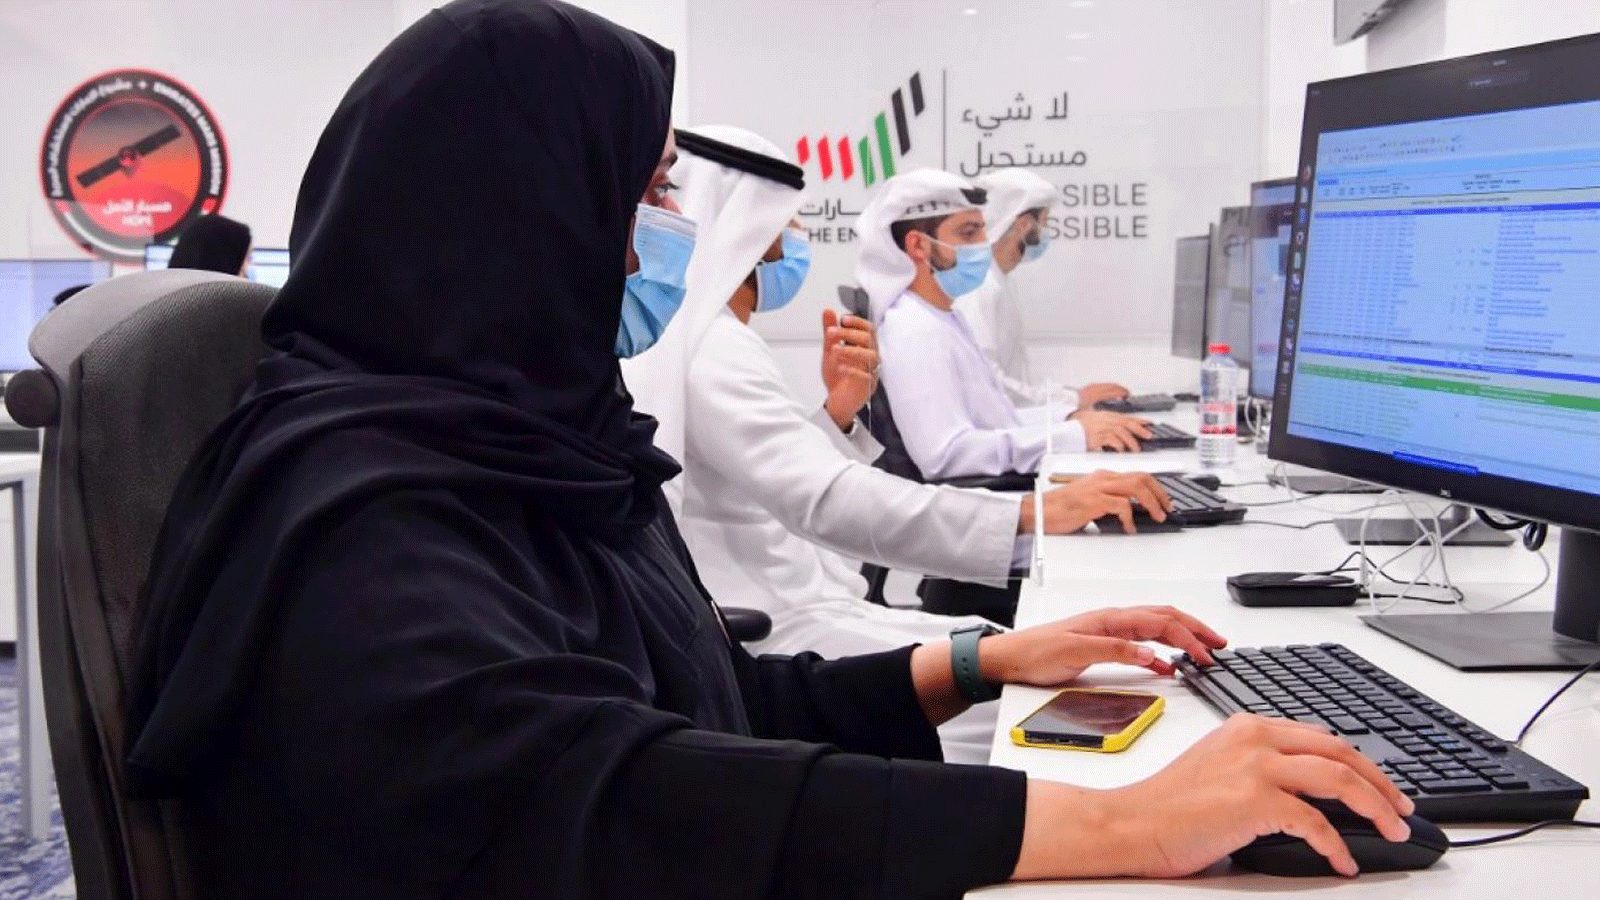 مواطنون إماراتيون يعملون في مركز محمد بن راشد للفضاء في دبي.19 تموز/ يوليو 2021